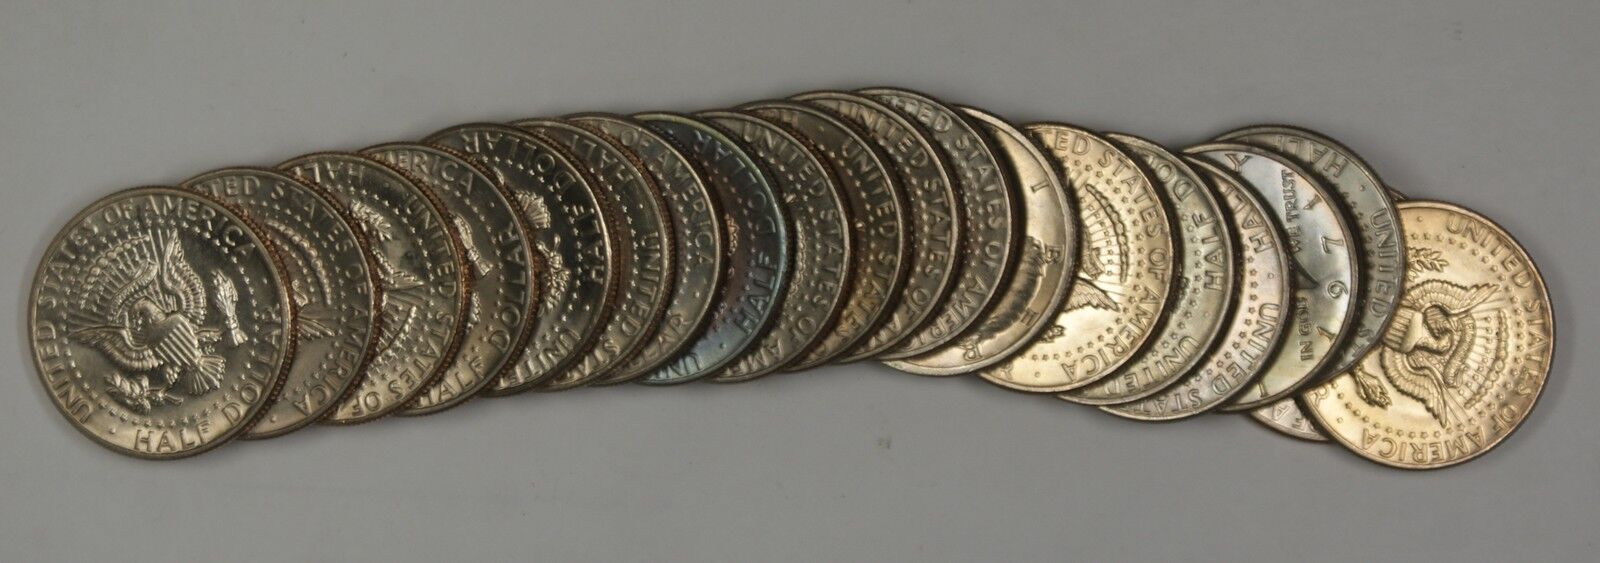 1979 P BU Kennedy Half Dollar Roll 20 Coins